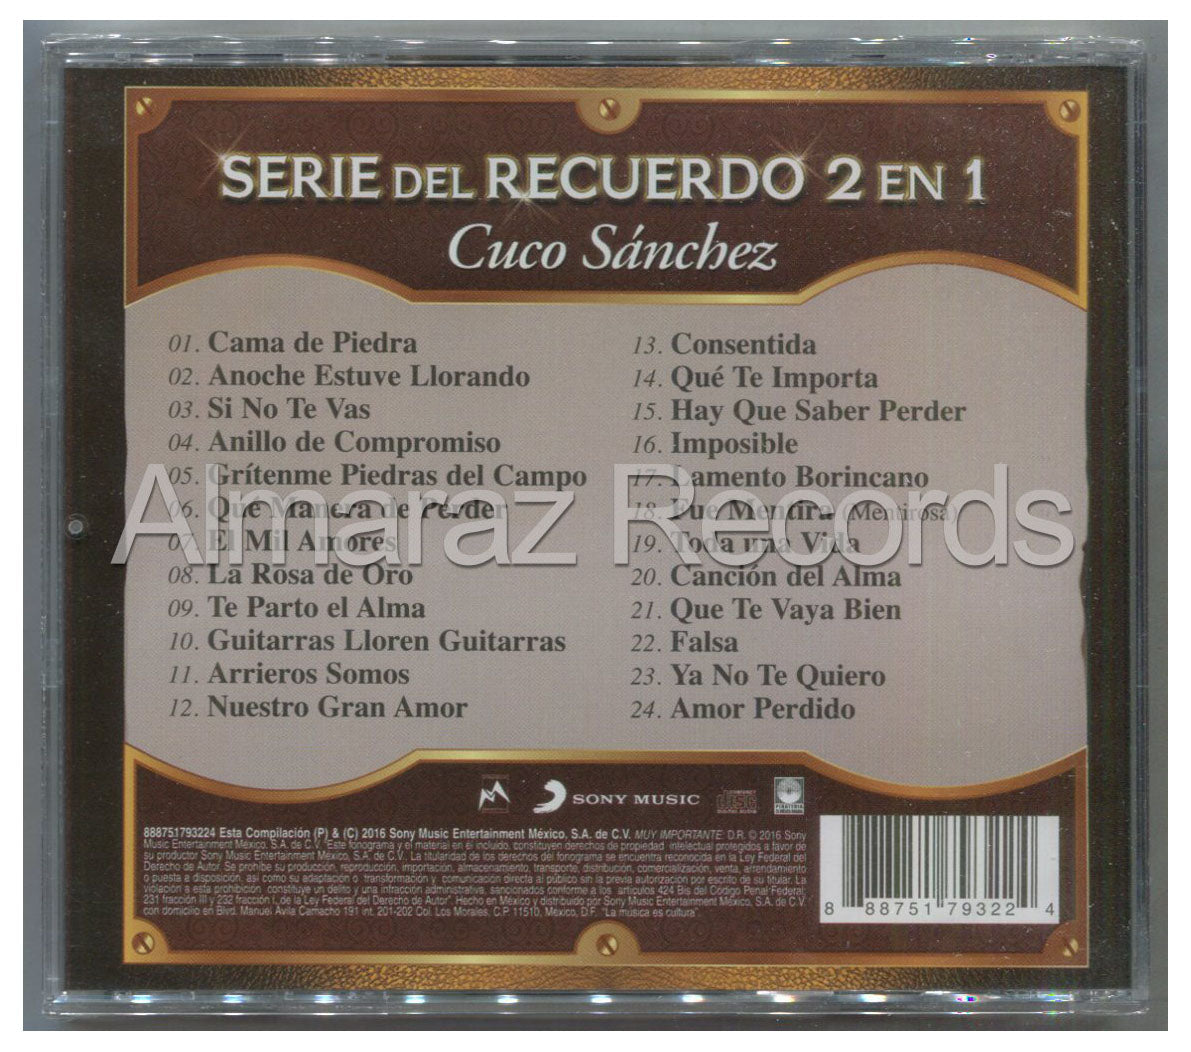 Cuco Sanchez Serie Del Recuerdo 2 En 1 CD